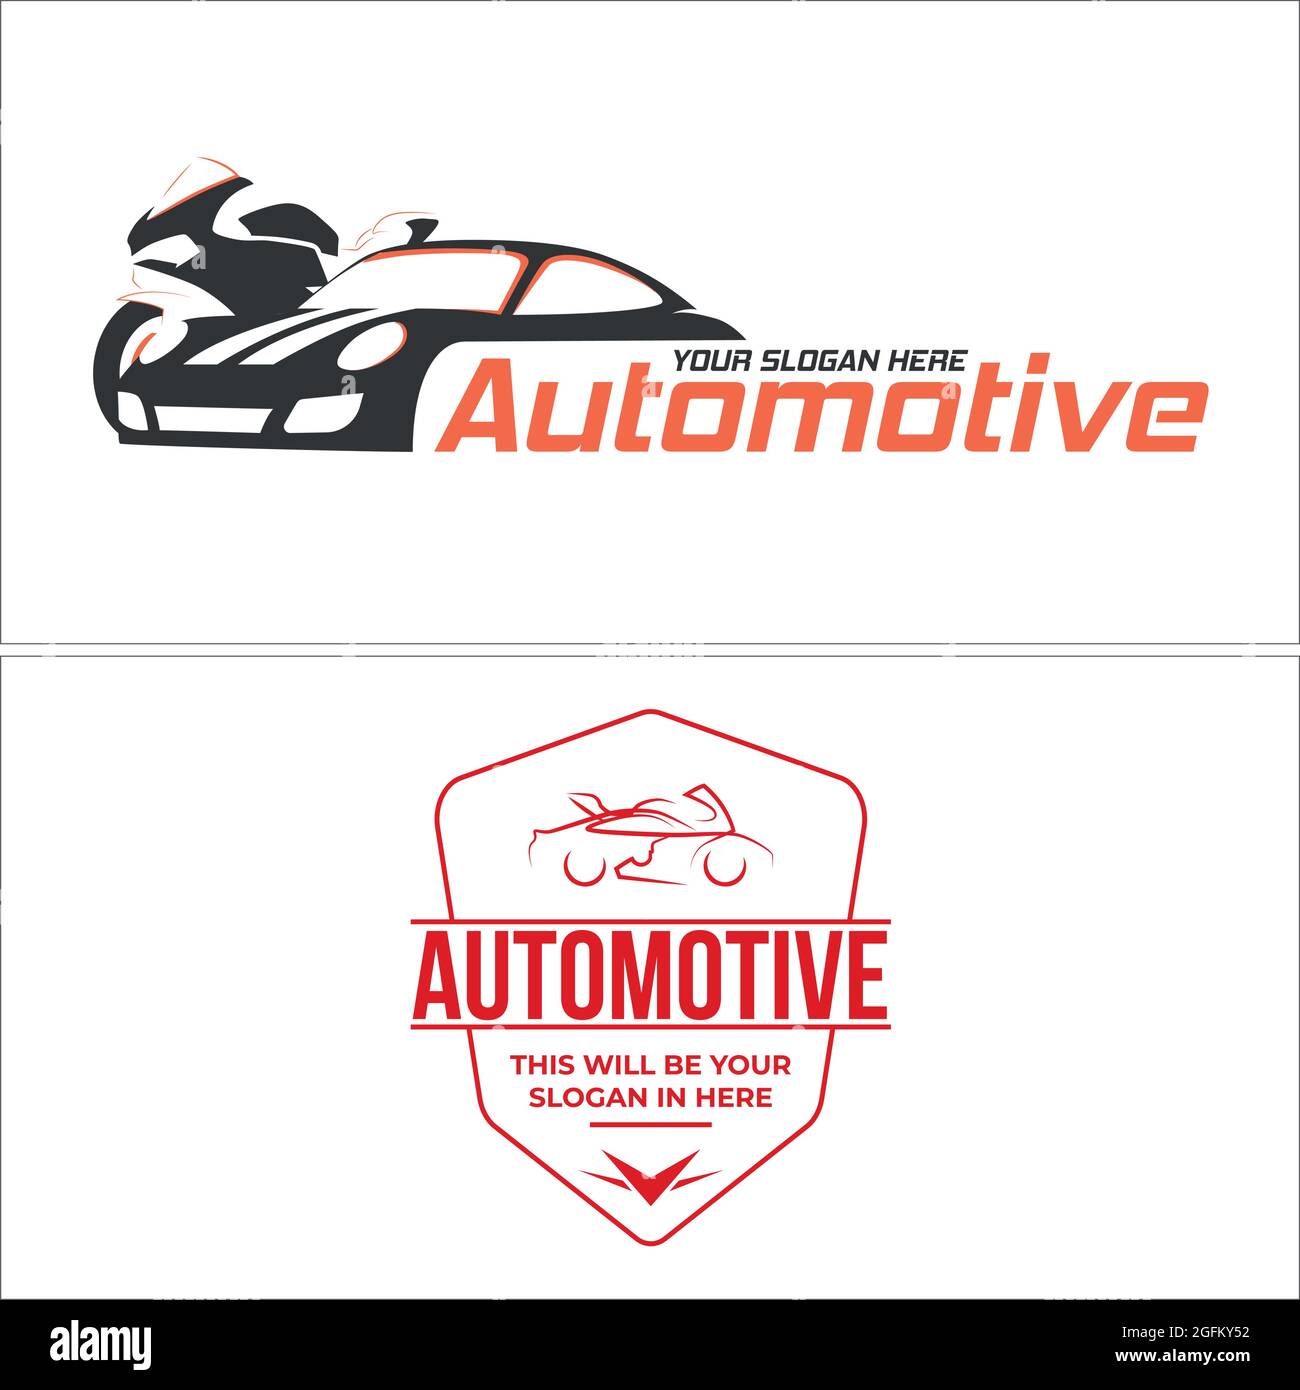 https://c8.alamy.com/compde/2gfky52/automobil-auto-und-motorrad-silhouette-logo-design-vektor-2gfky52.jpg